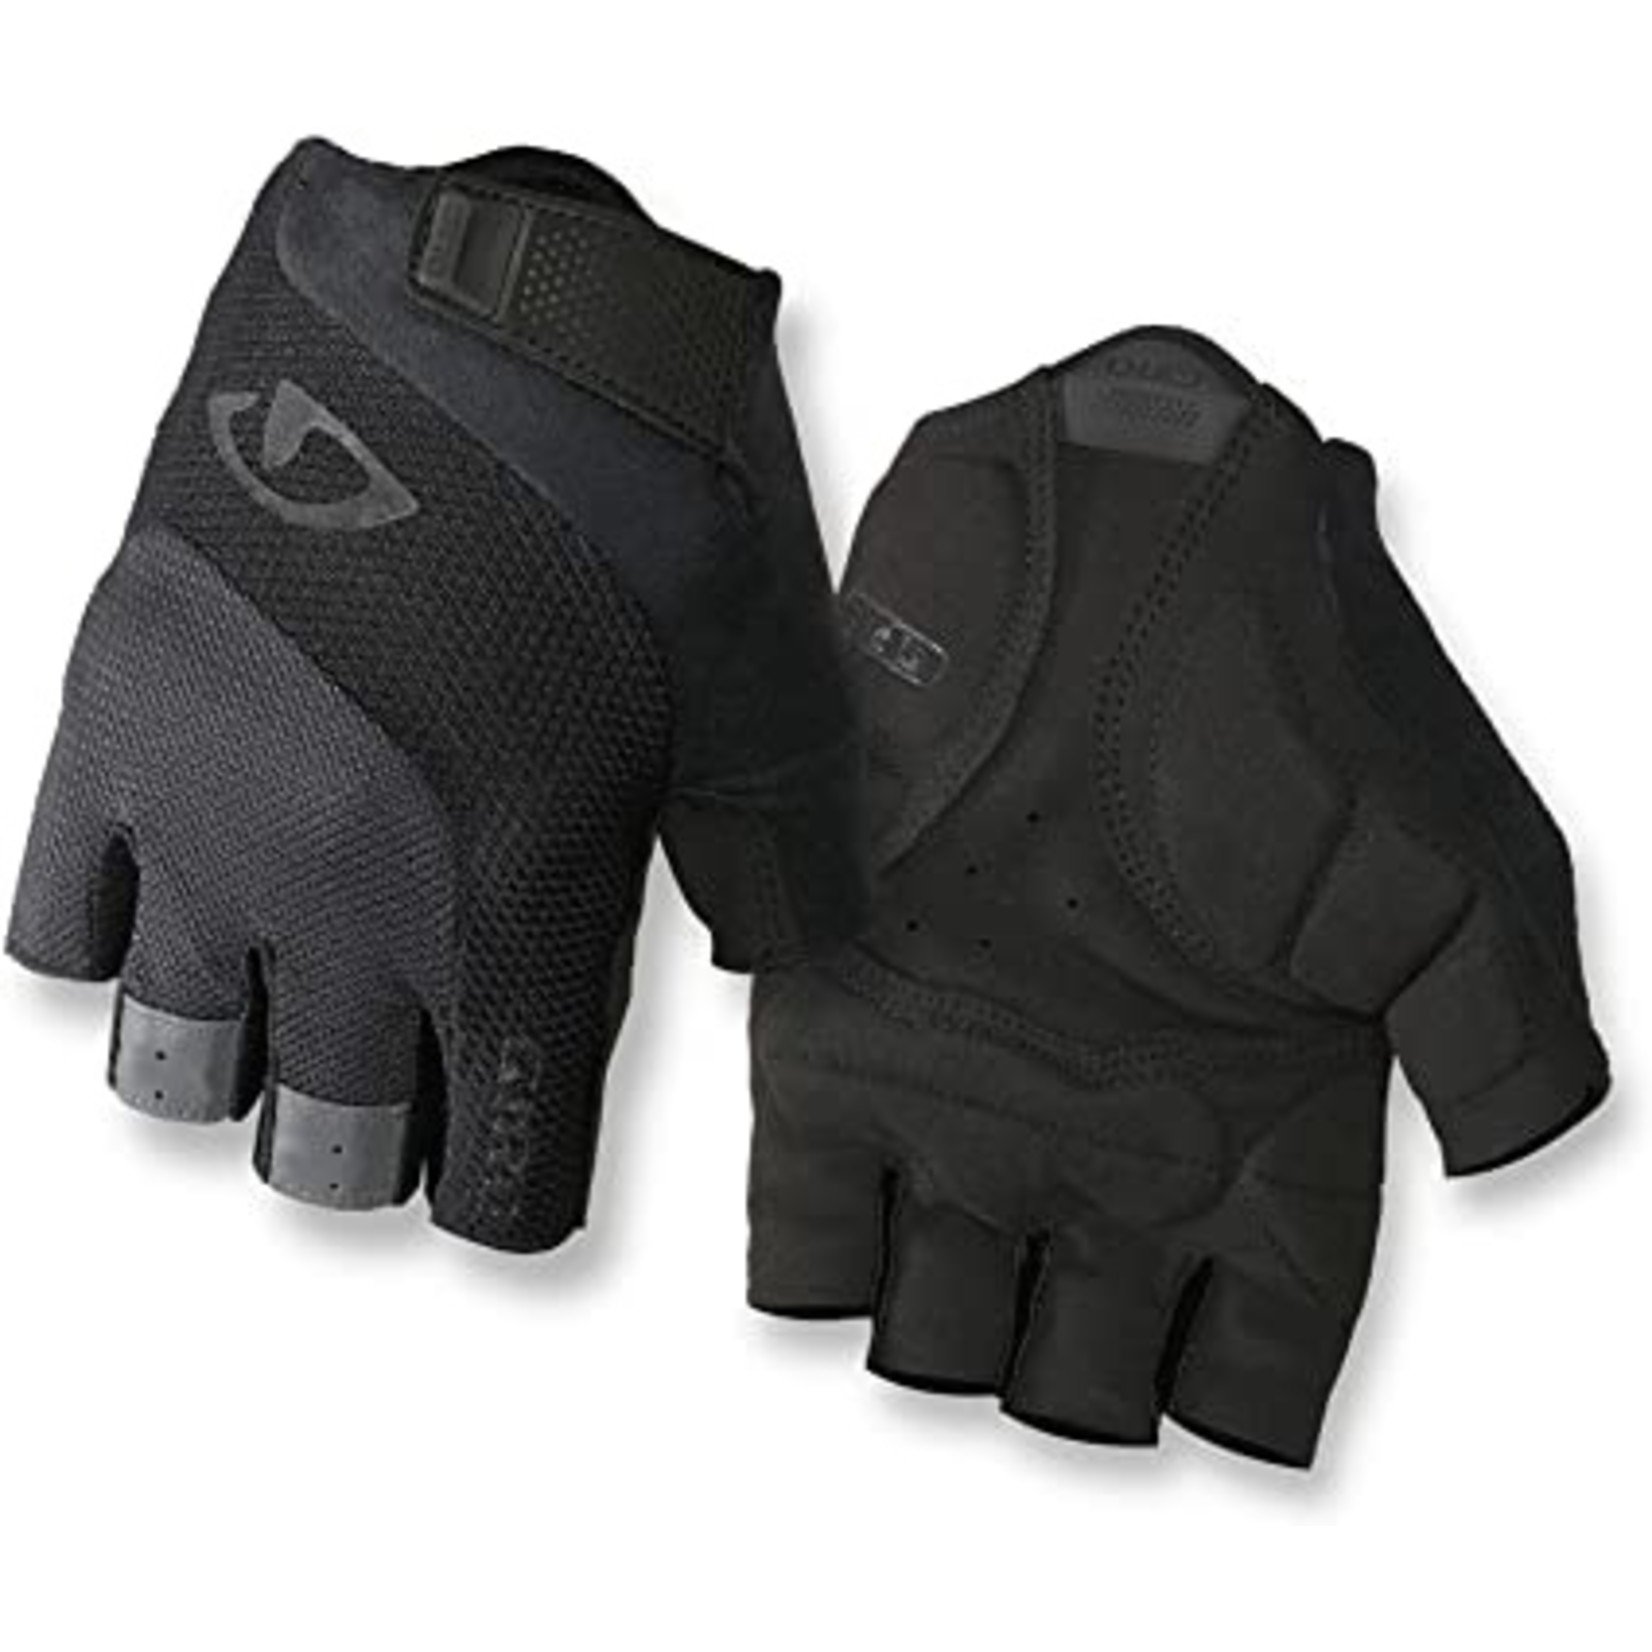 Giro Giro Bravo Gel Gloves